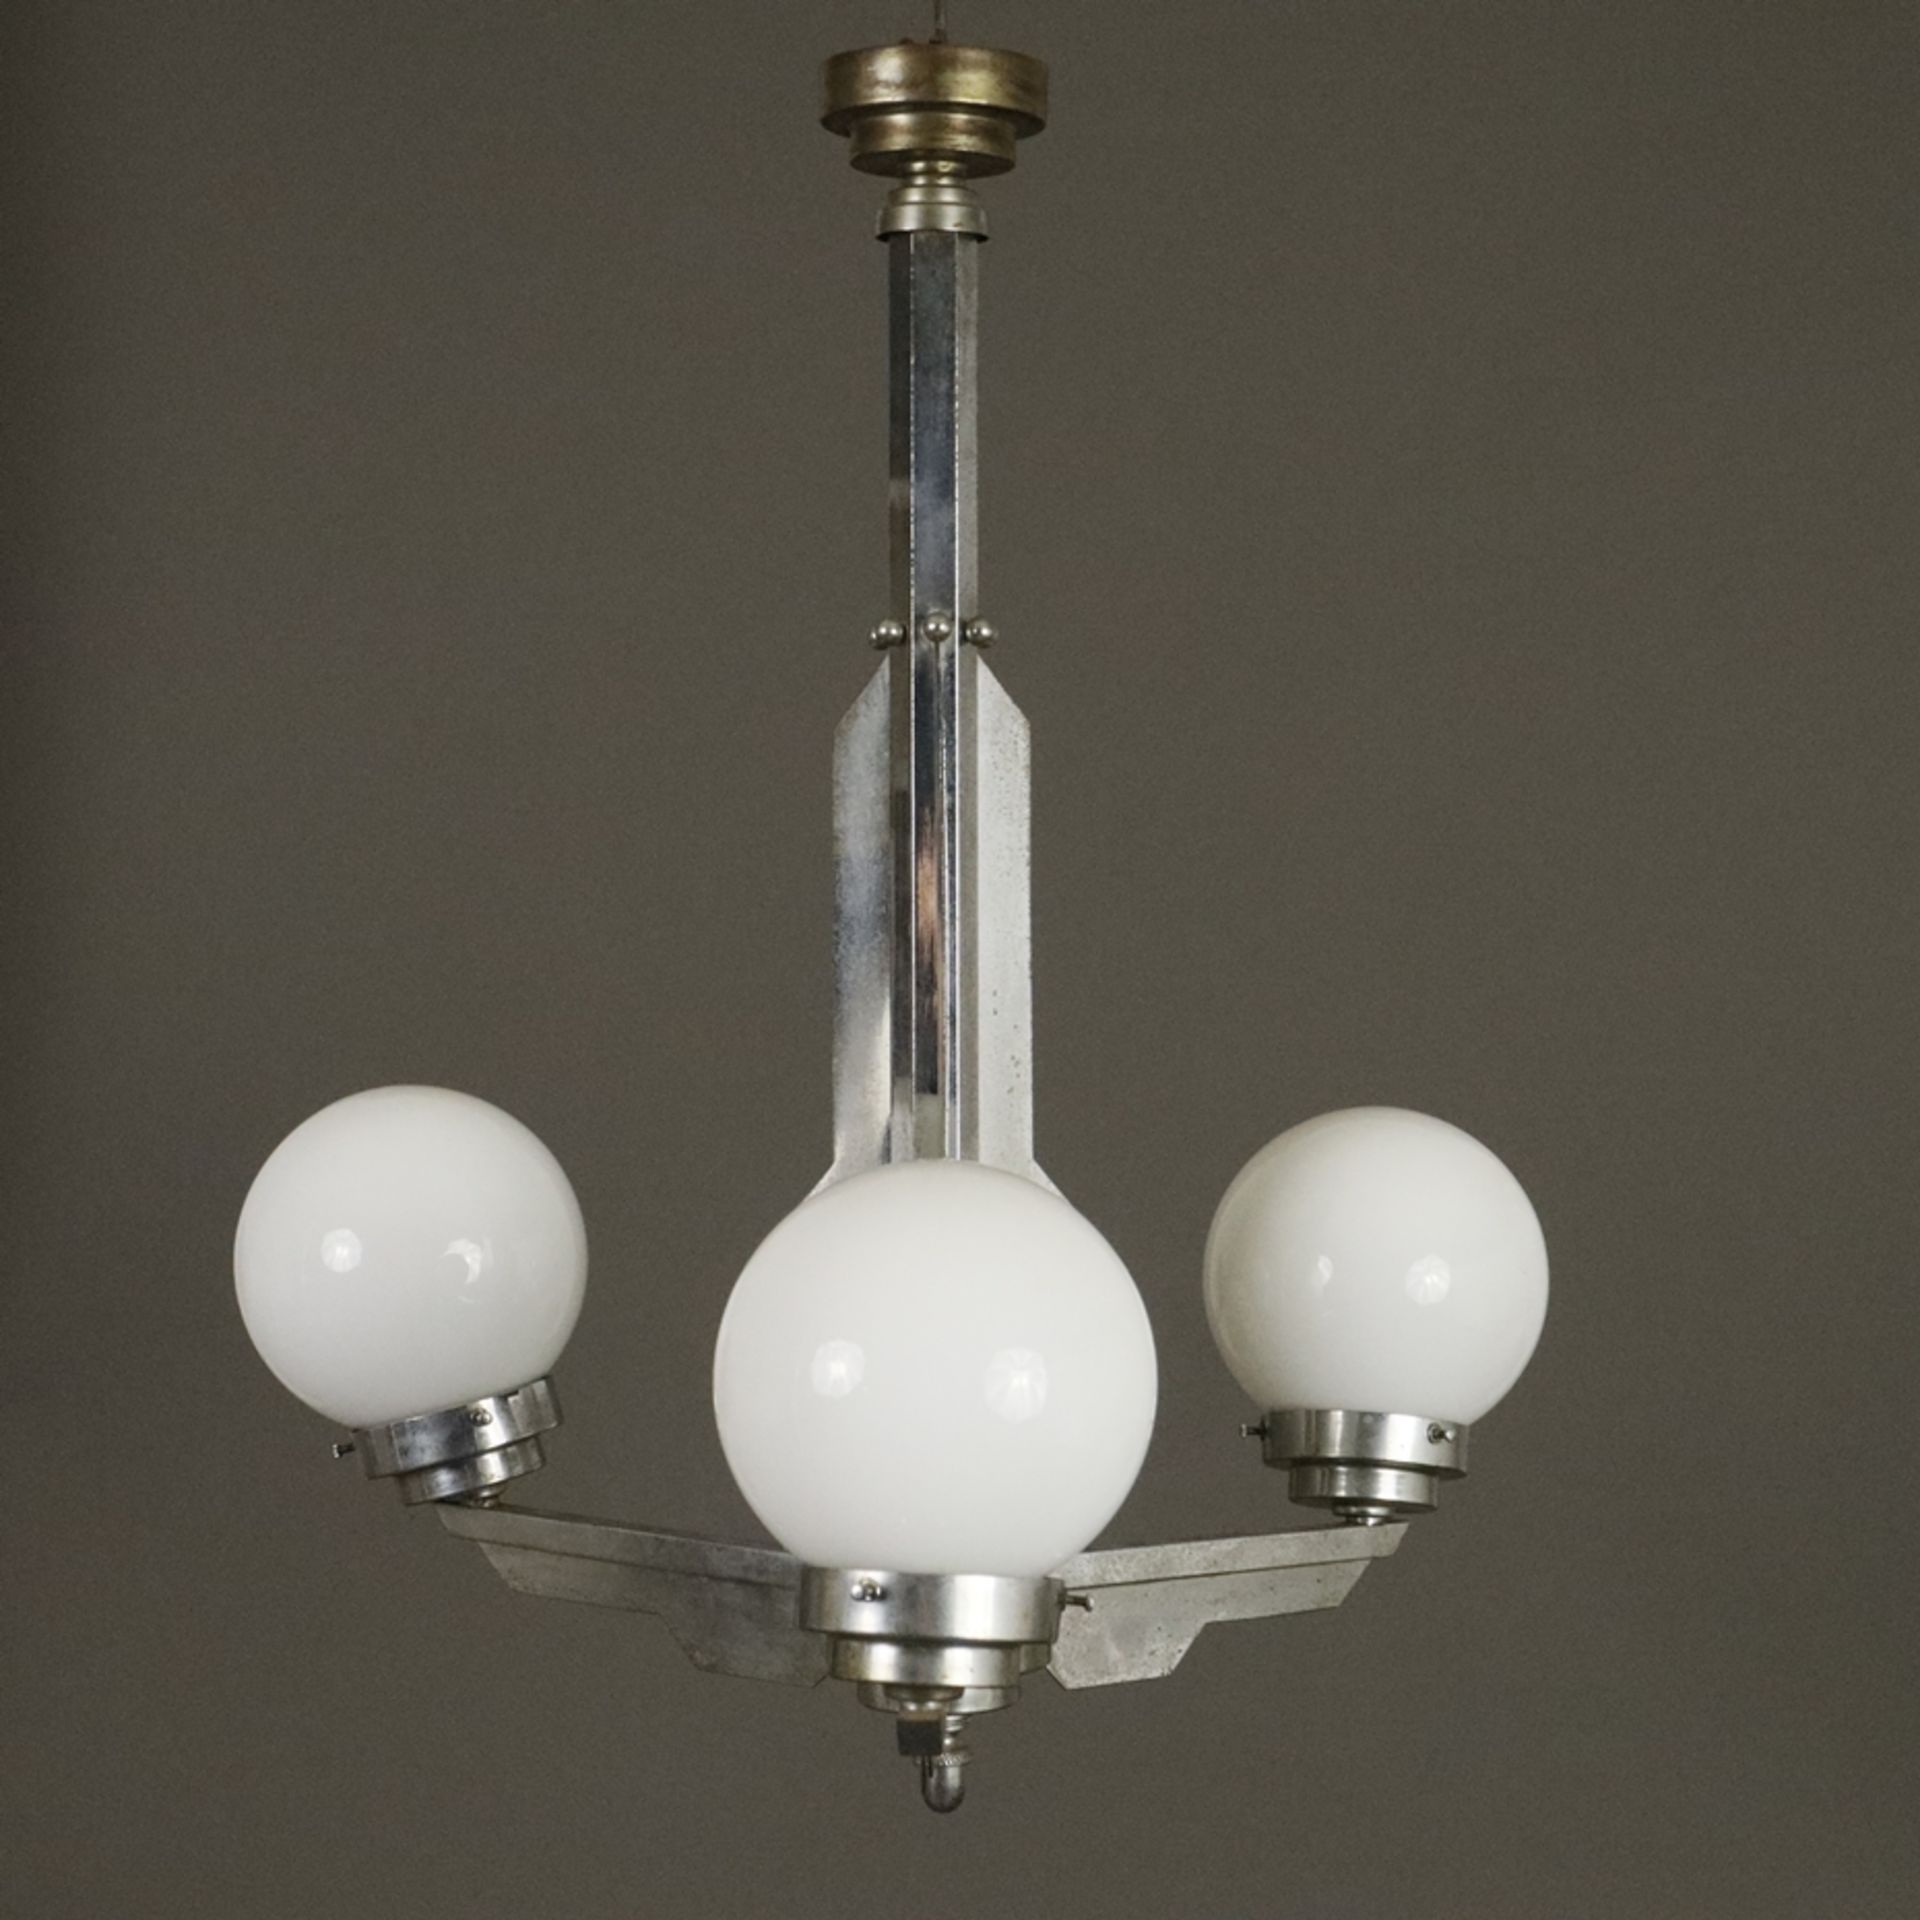 Art Déco-Deckenlampe - Frankreich um 1920/30, dreiarmiges Metallgestell mit drei Opalglas-Kugelschi